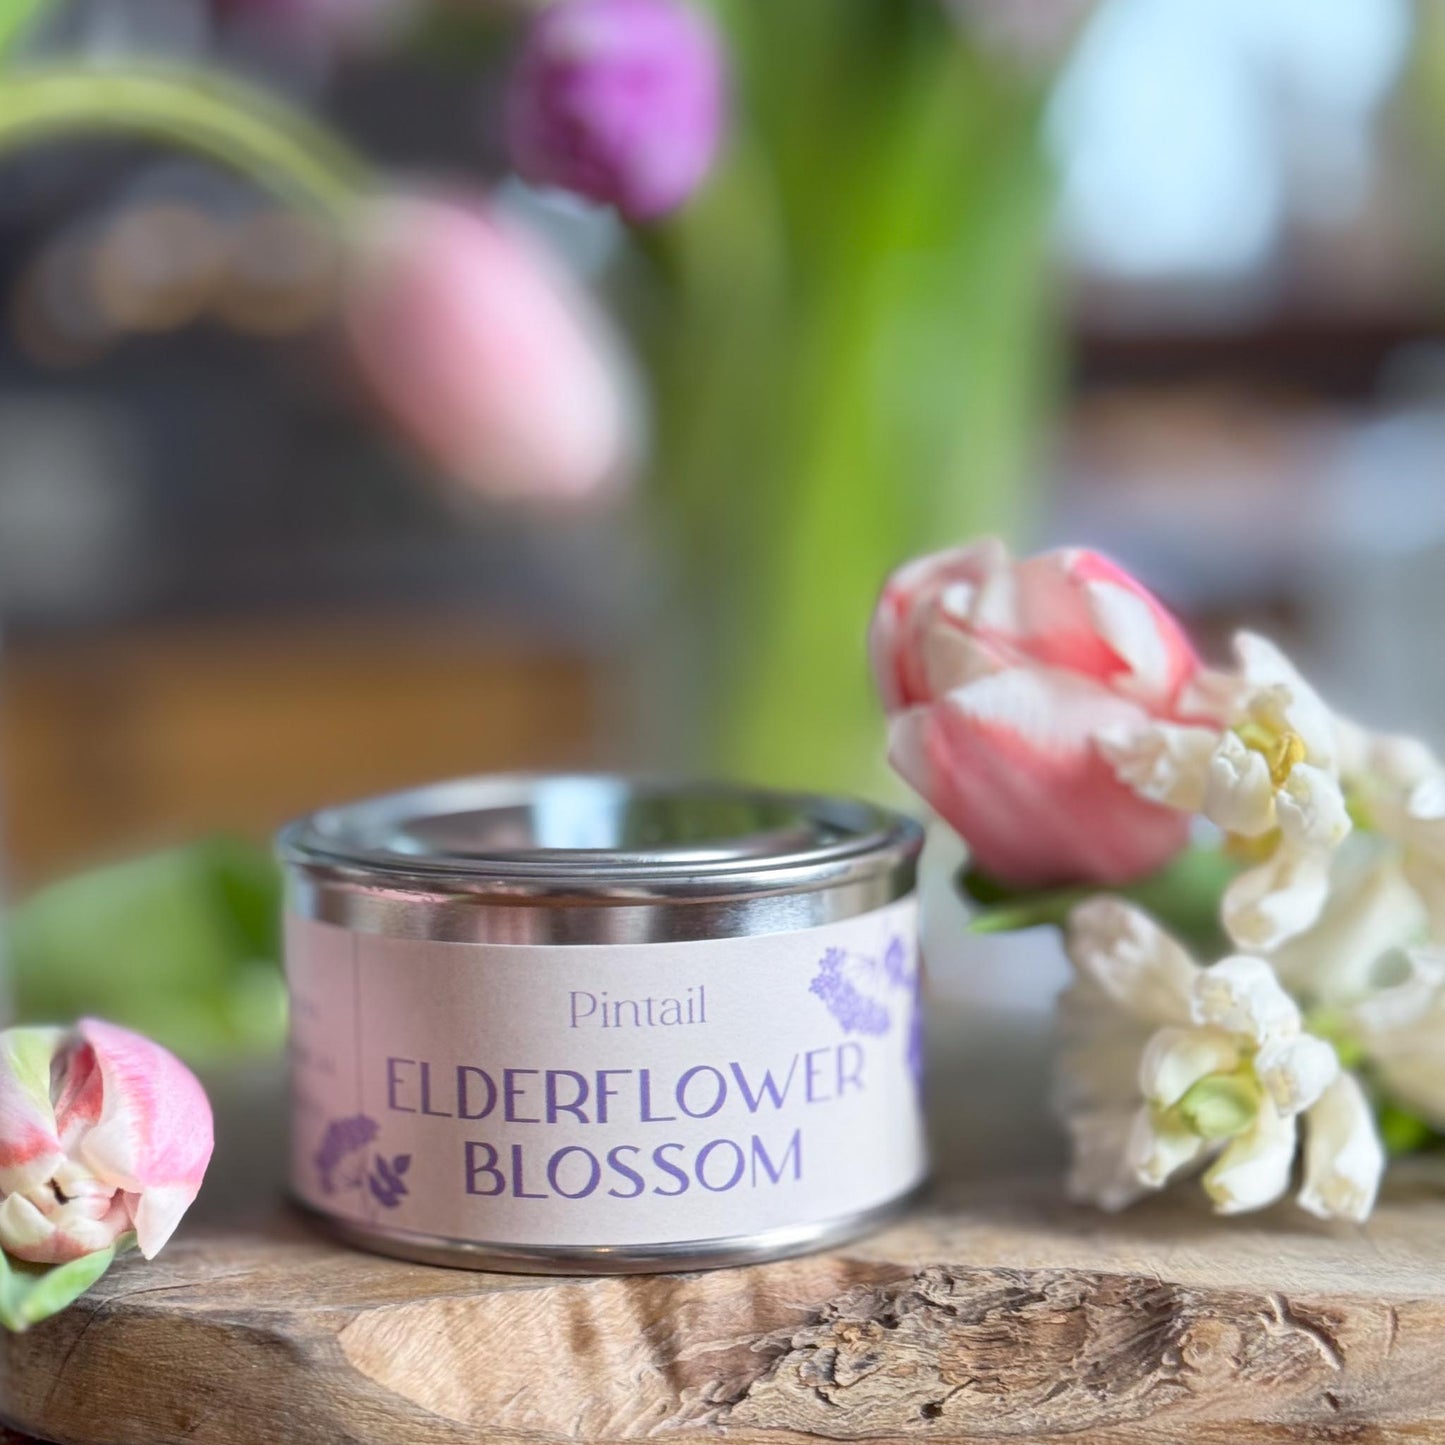 Elderflower Blossom Paint Pot